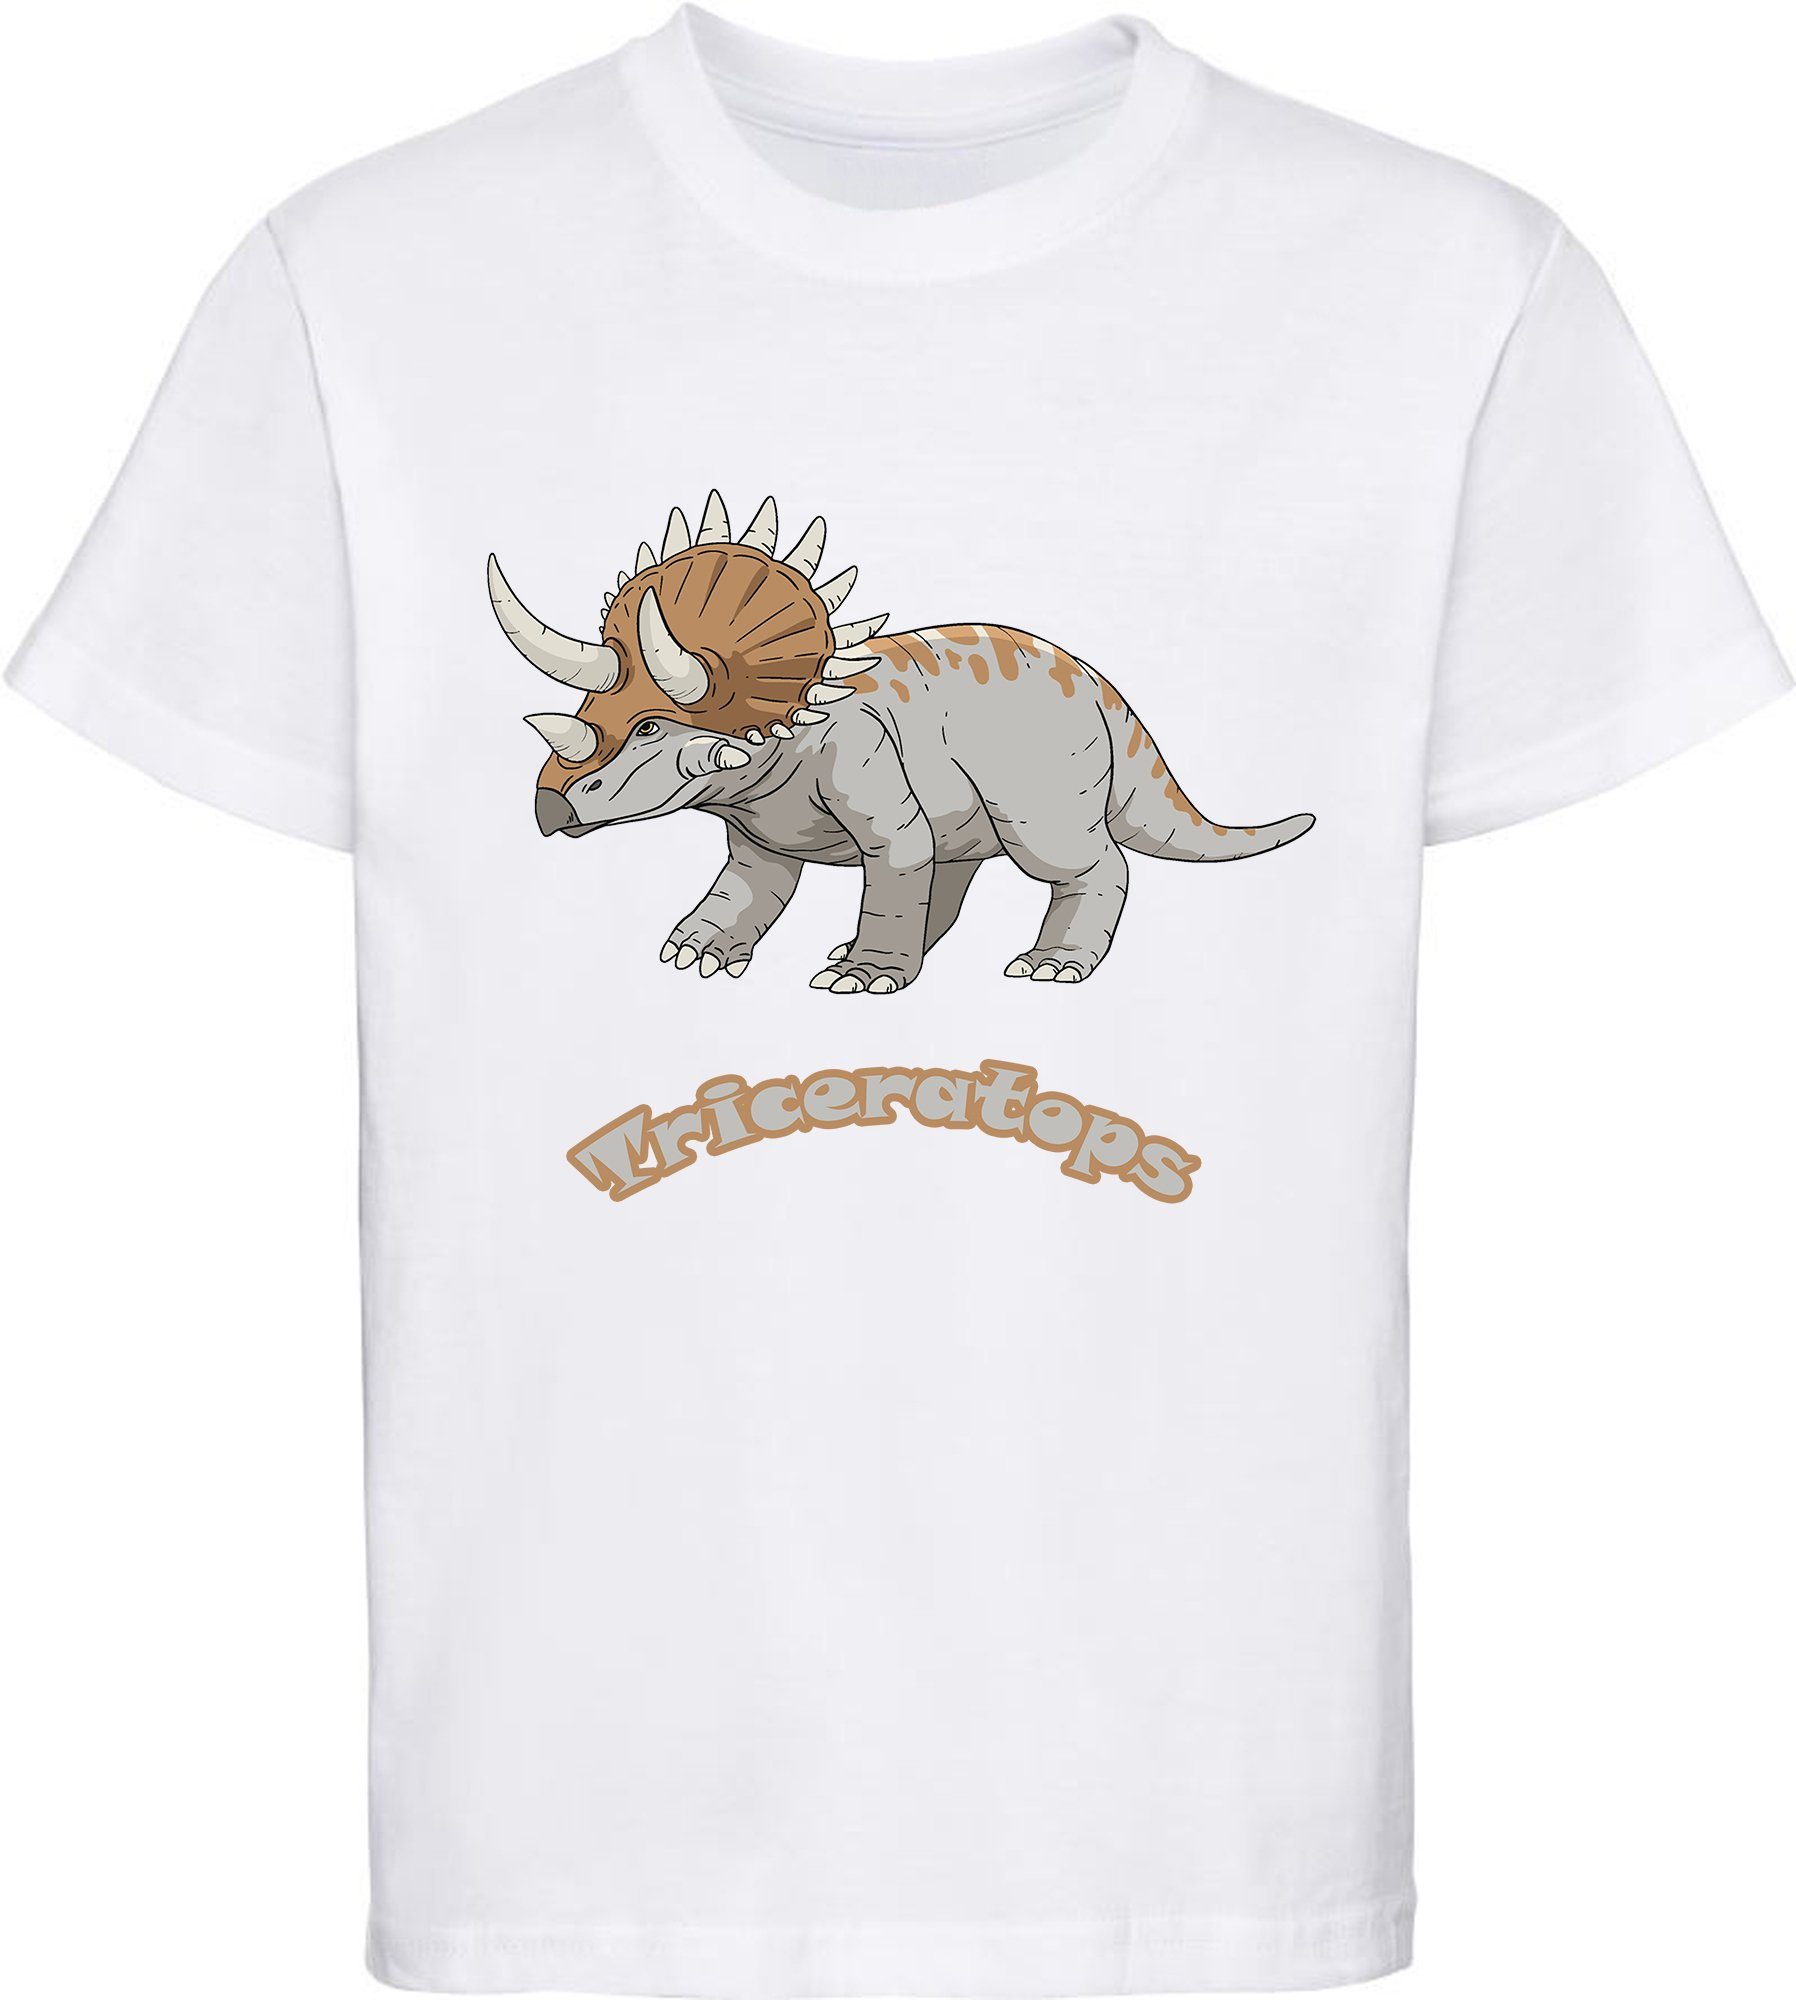 MyDesign24 T-Shirt bedrucktes Baumwolle weiss 100% Aufdruck, Kinder mit i52 mit Dino T-Shirt Triceratops